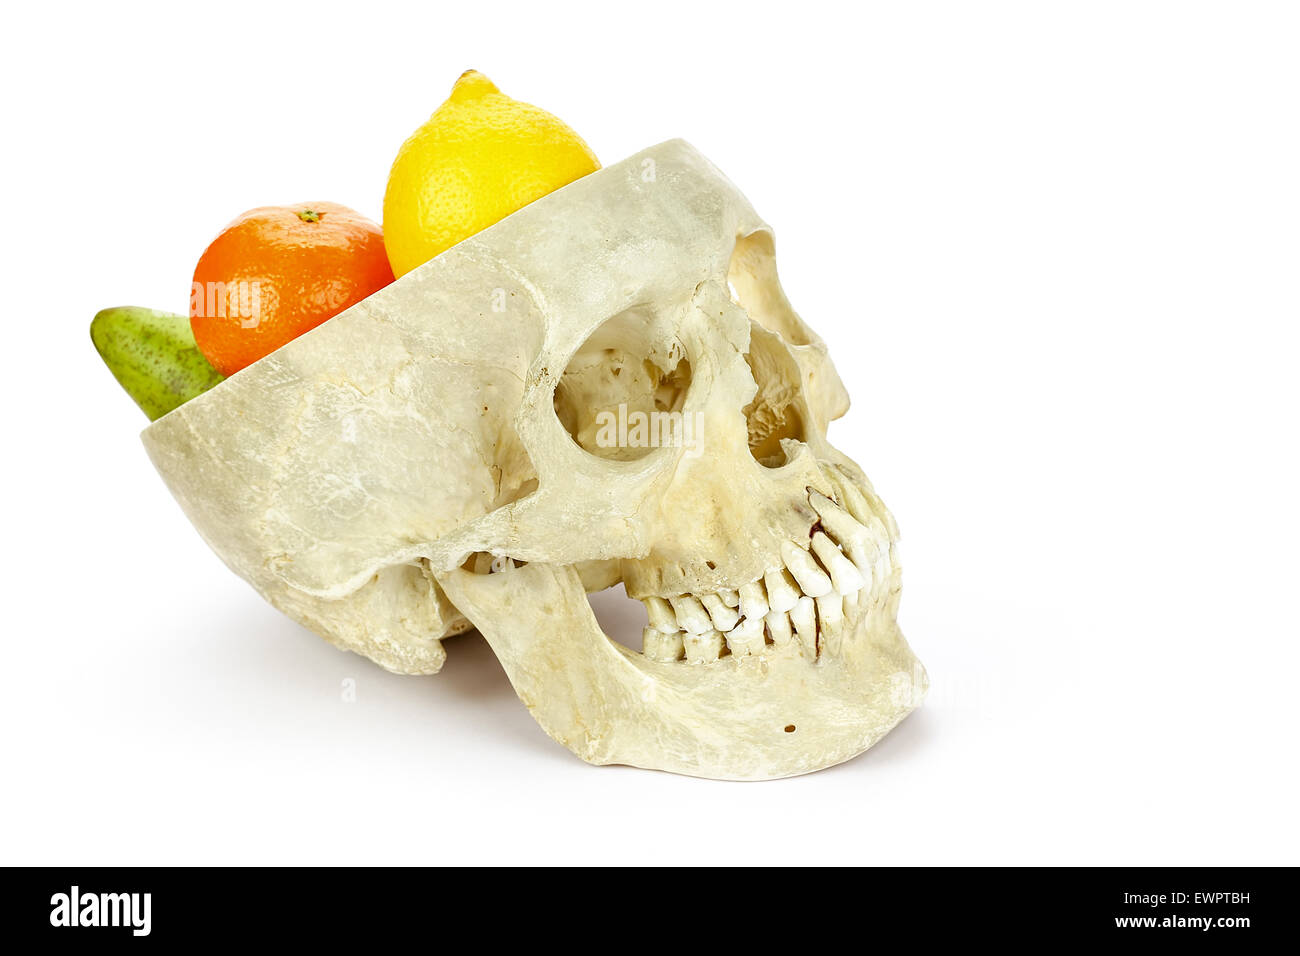 Cranio umano come scala di frutta con frutta come il limone e arancio pera isolati su sfondo bianco Foto Stock